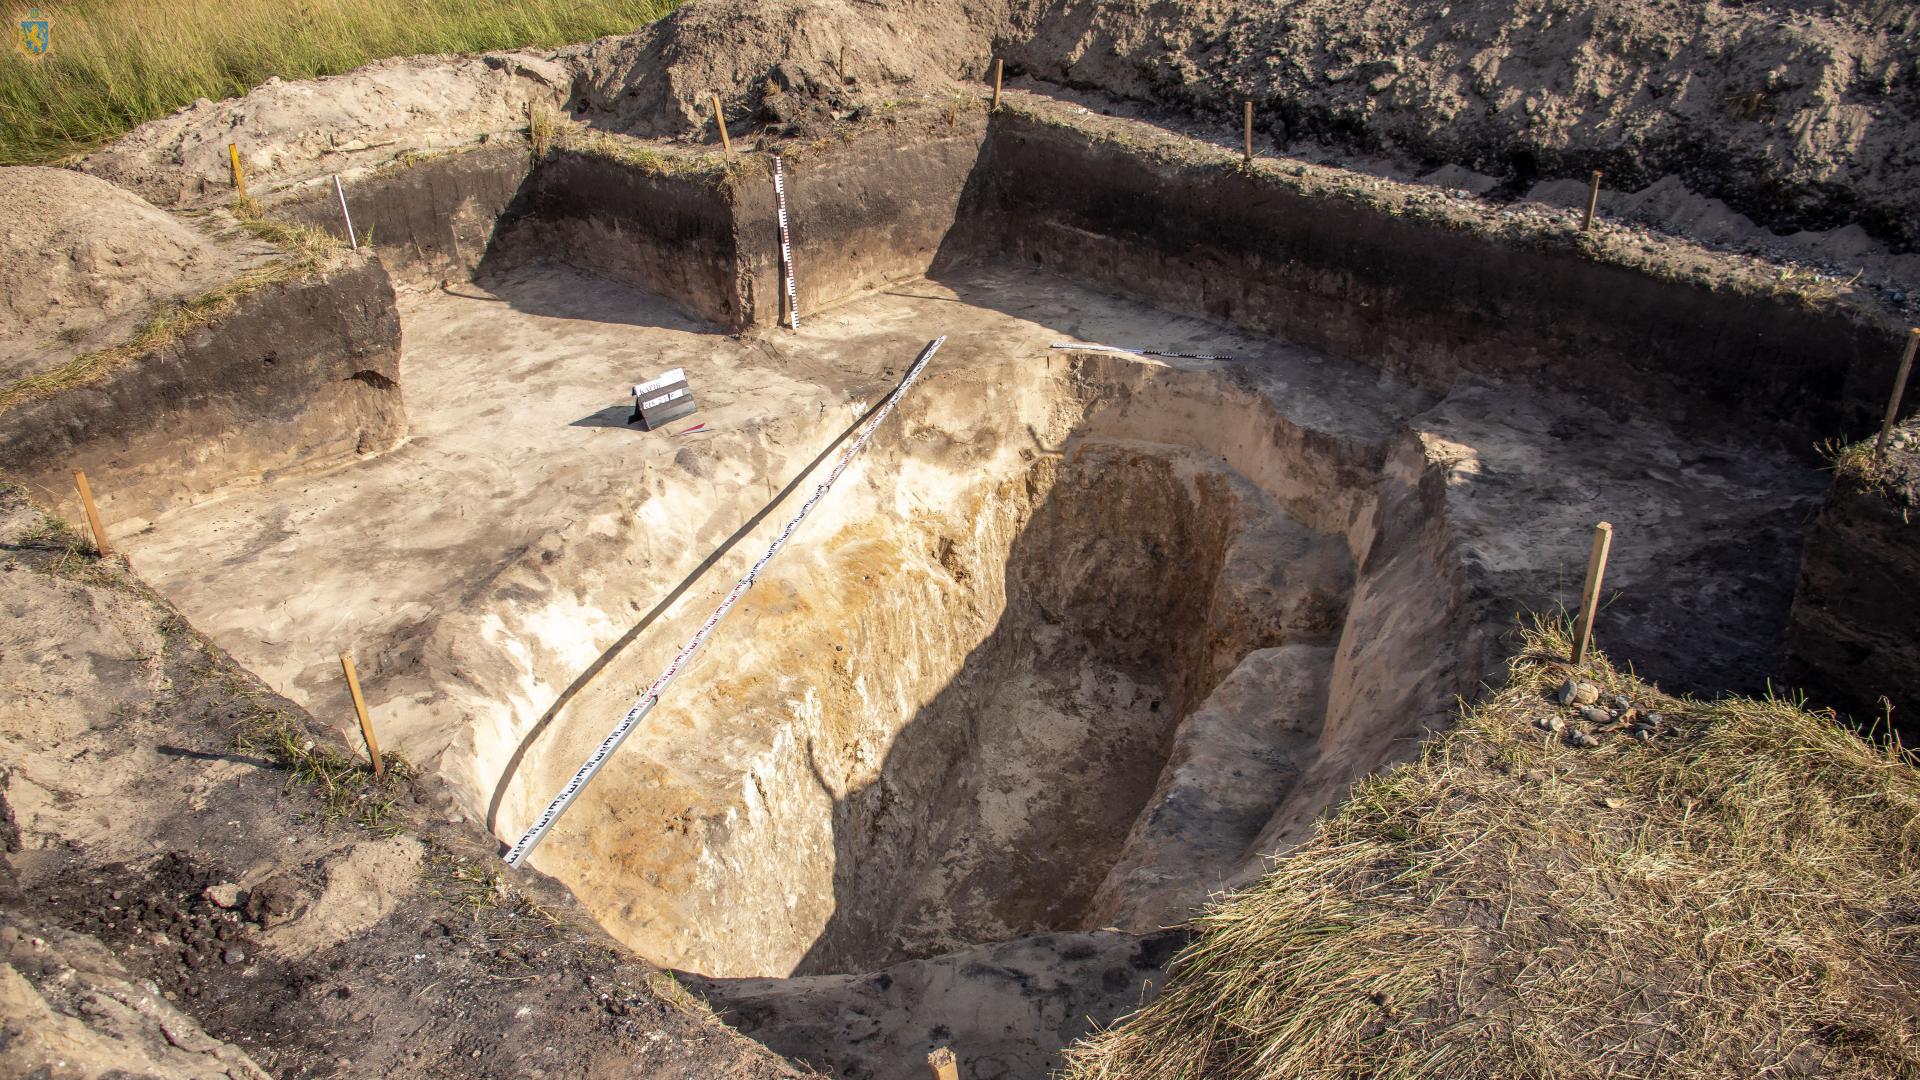 На Львовщине археологи нашли захоронение и загадочное сооружение времен Римской империи (фото)